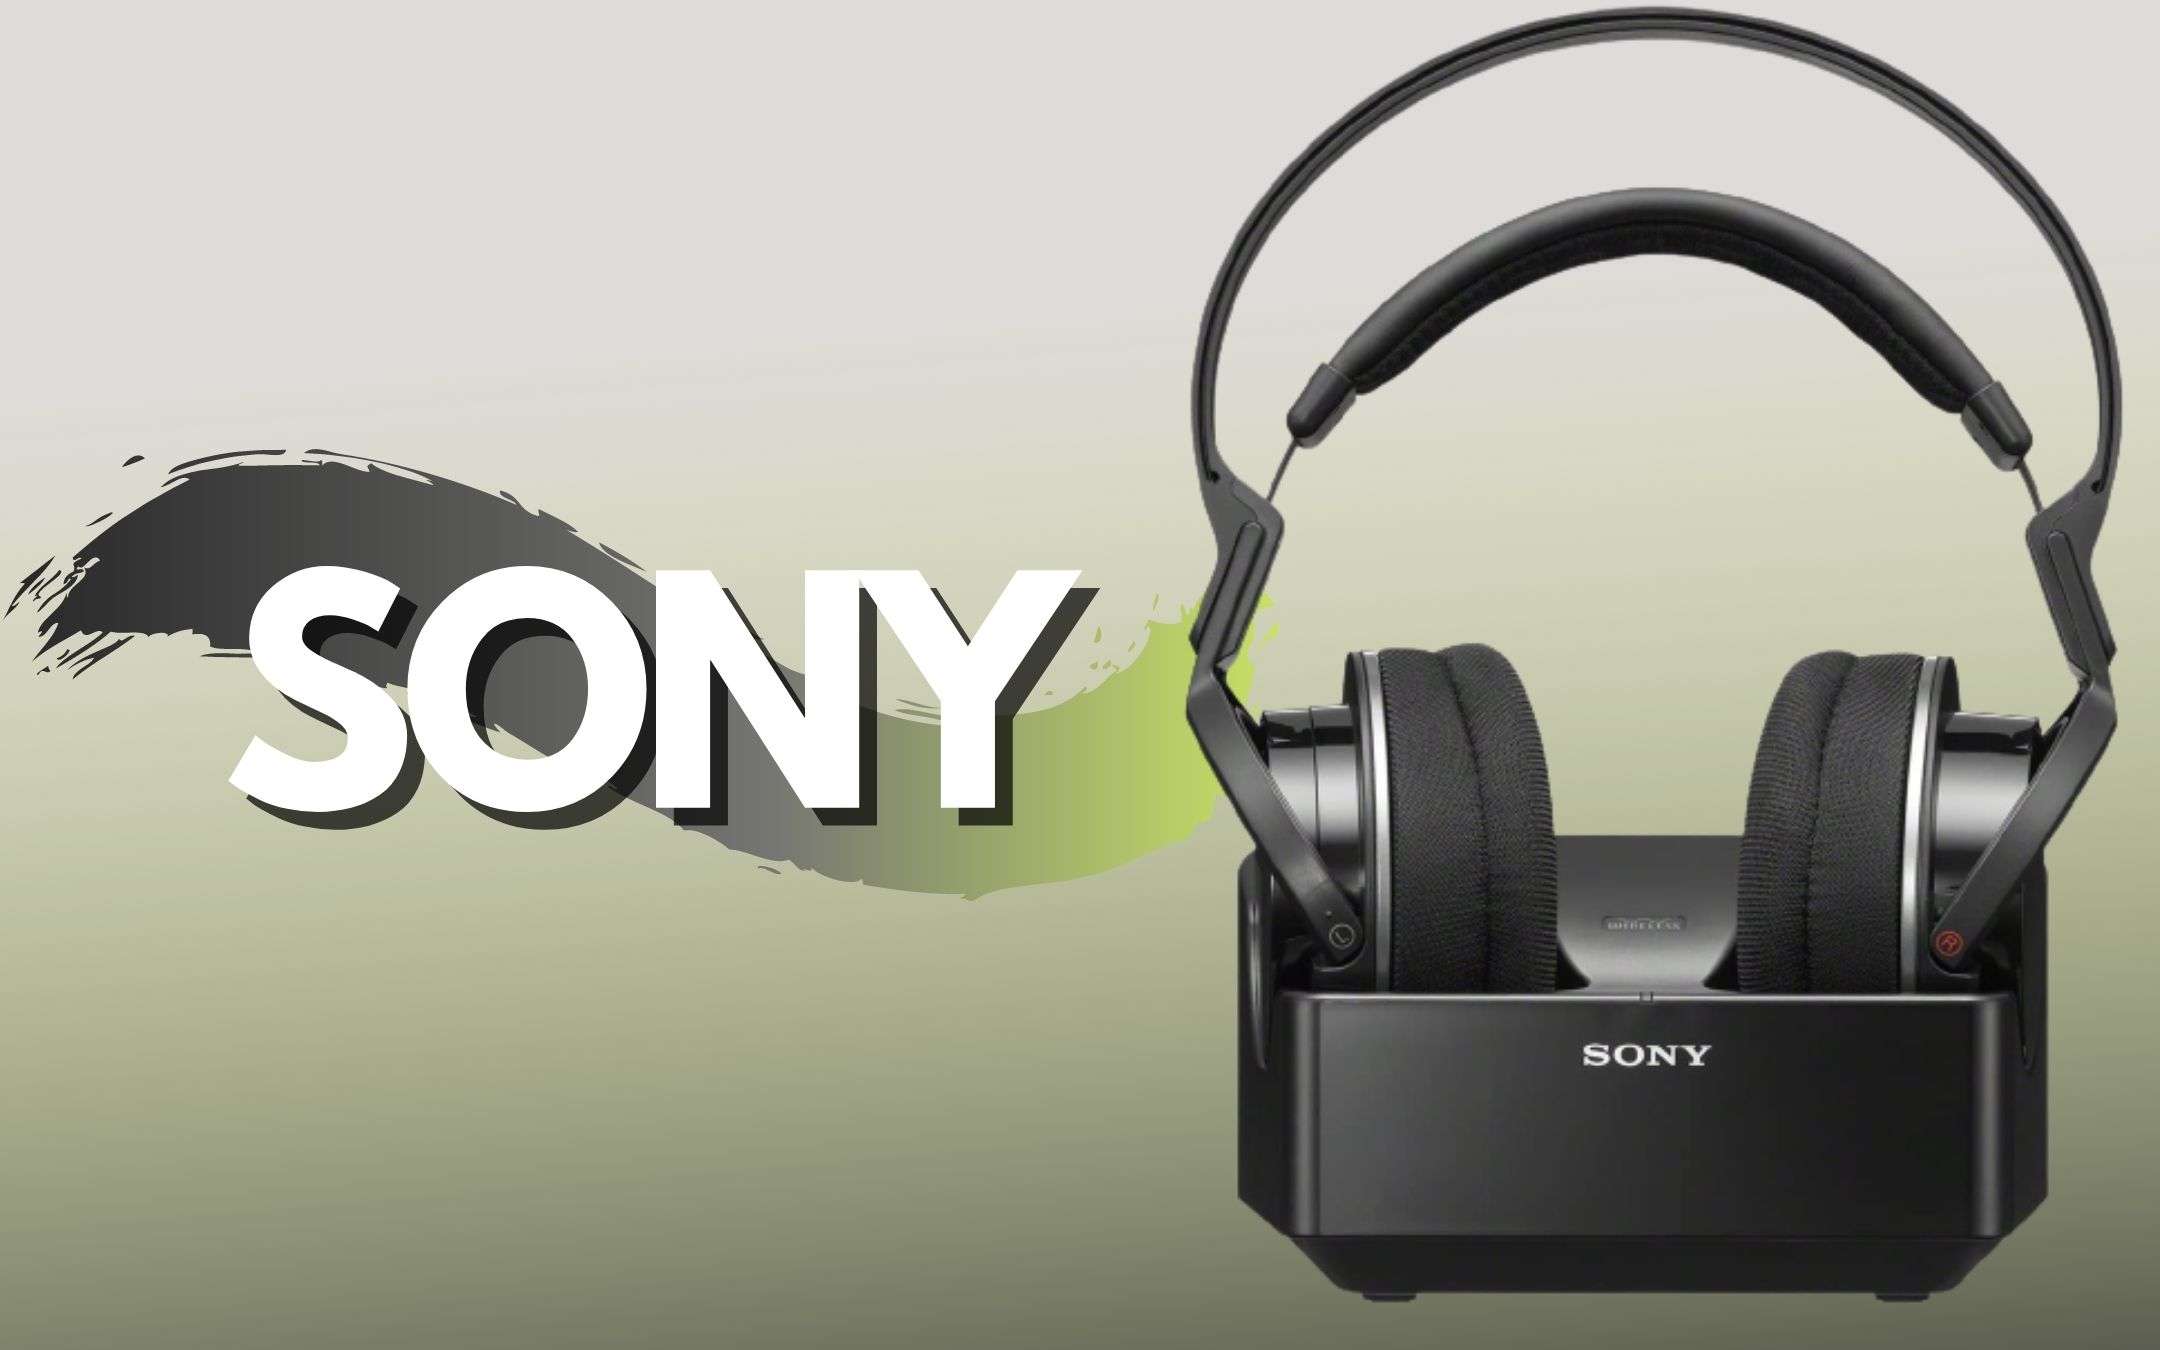 Cuffie Over Ear Sony con base di ricarica a prezzo BOMBA